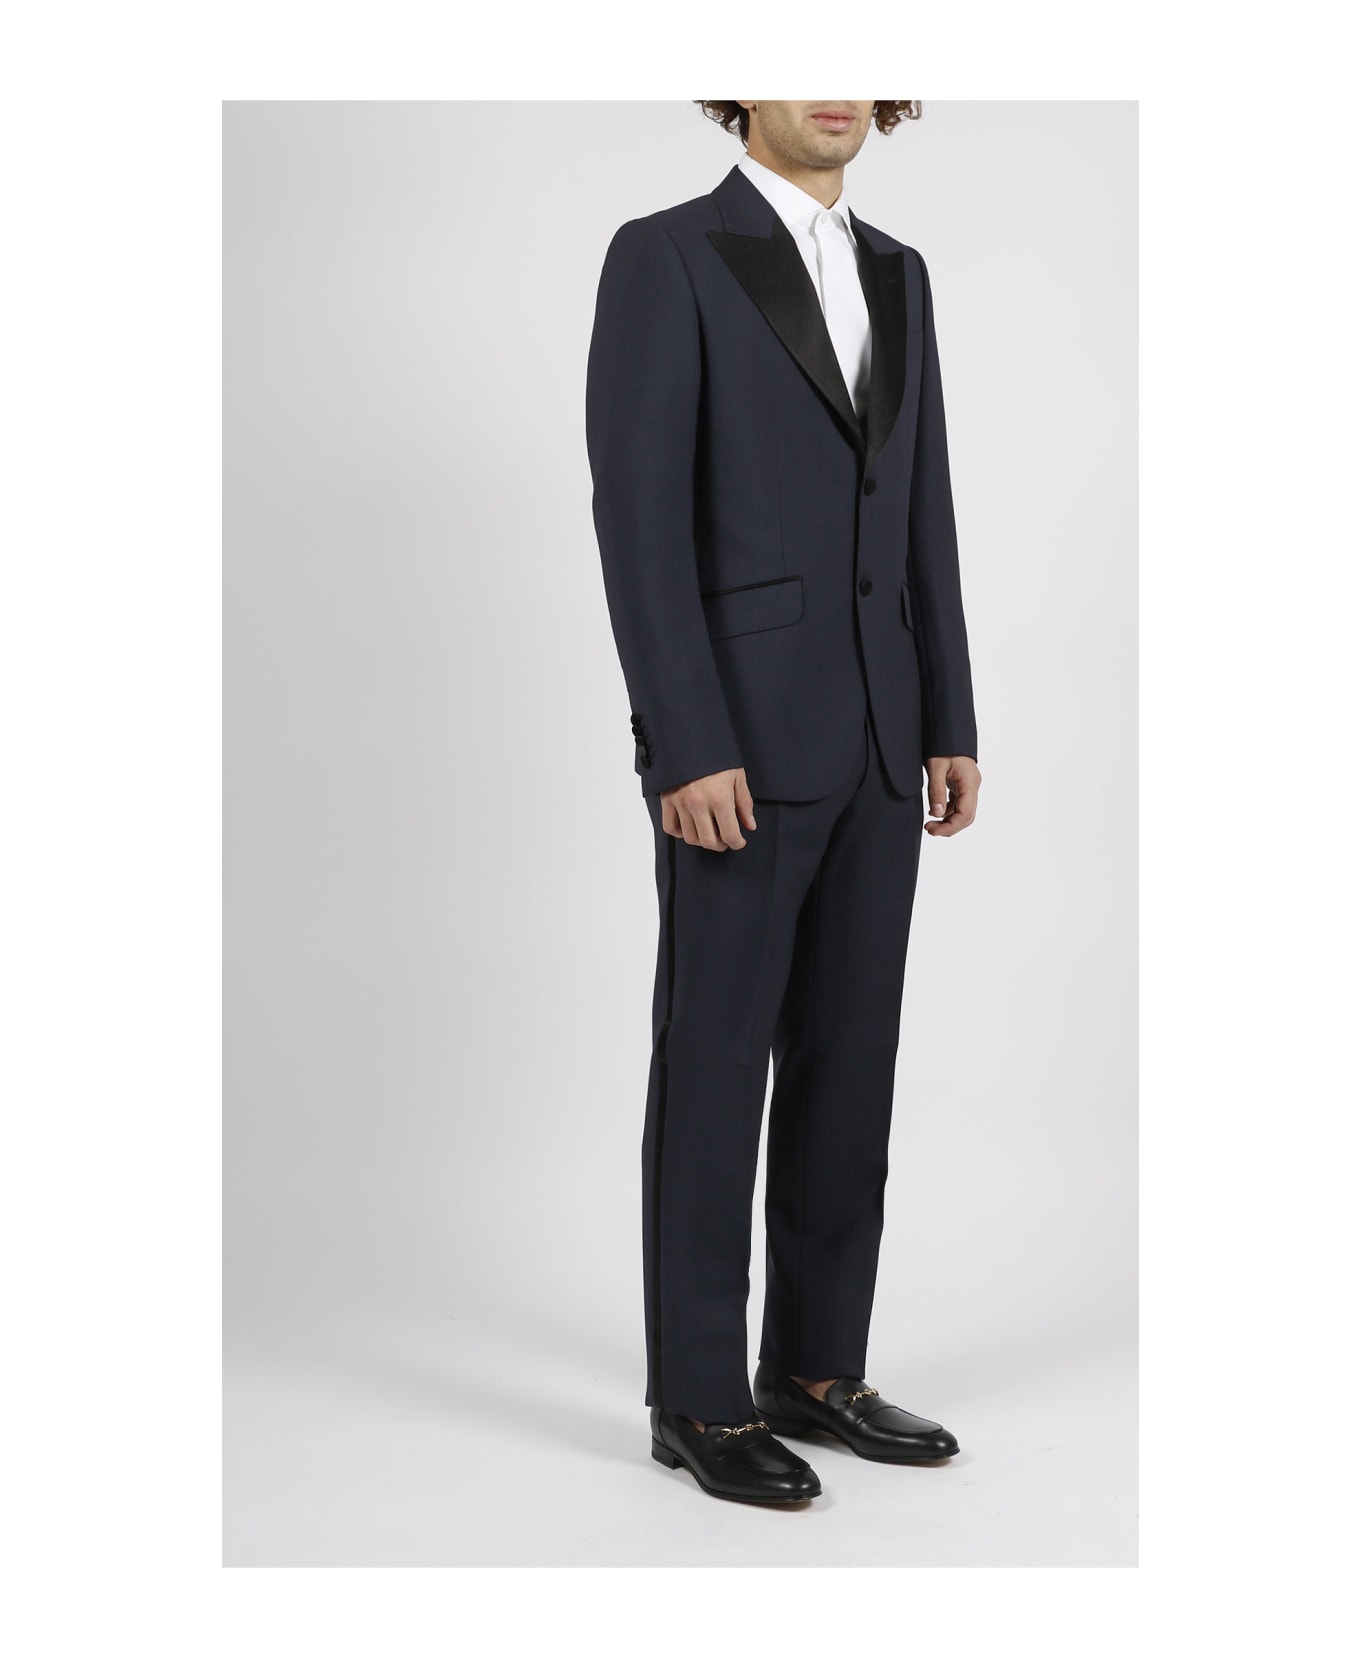 Gucci Tuxedo Suit - Blue